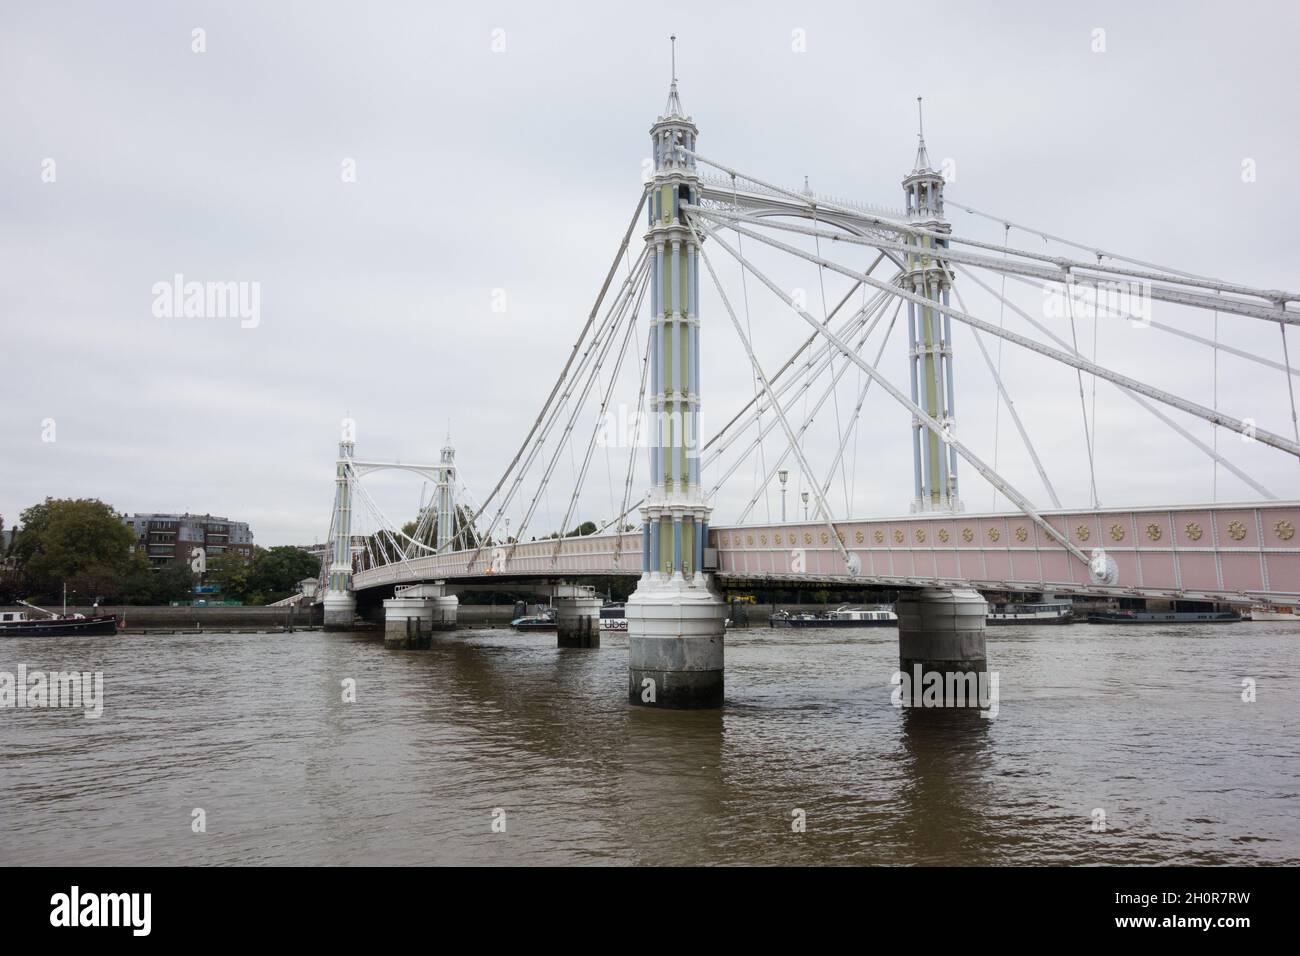 Rowland Mason Ordish e Albert Bridge di Joseph Bazalgette (nota anche come la Trembling Lady) sul Tamigi a Battersea, Londra, Inghilterra, Regno Unito Foto Stock